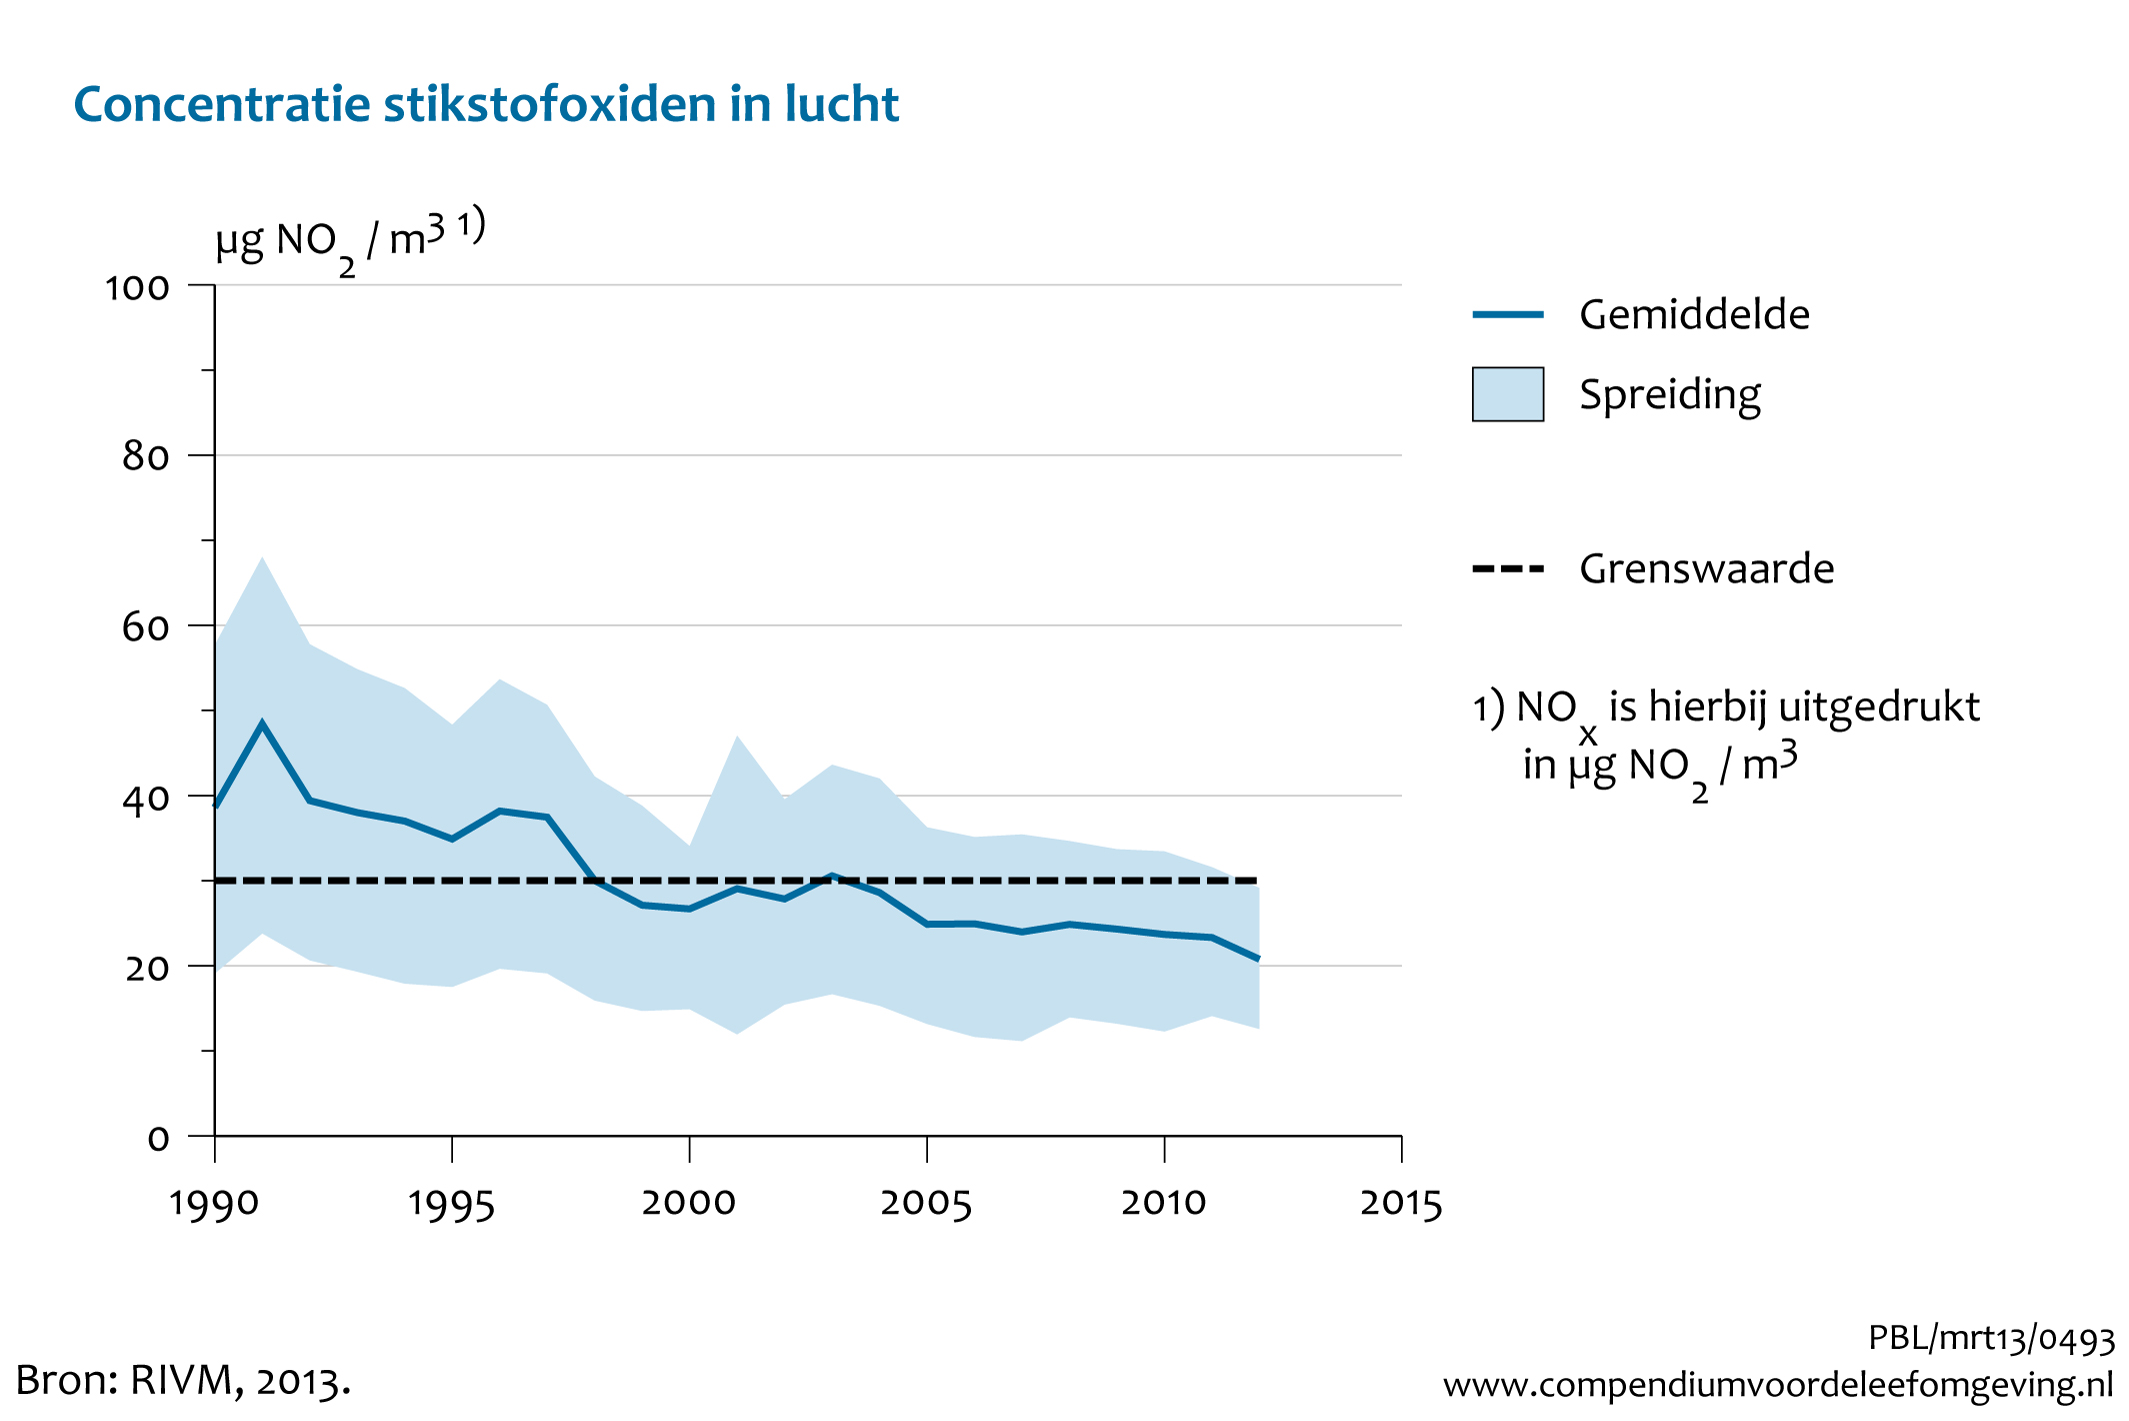 Figuur Trend stikstofoxiden 1990-2012. In de rest van de tekst wordt deze figuur uitgebreider uitgelegd.